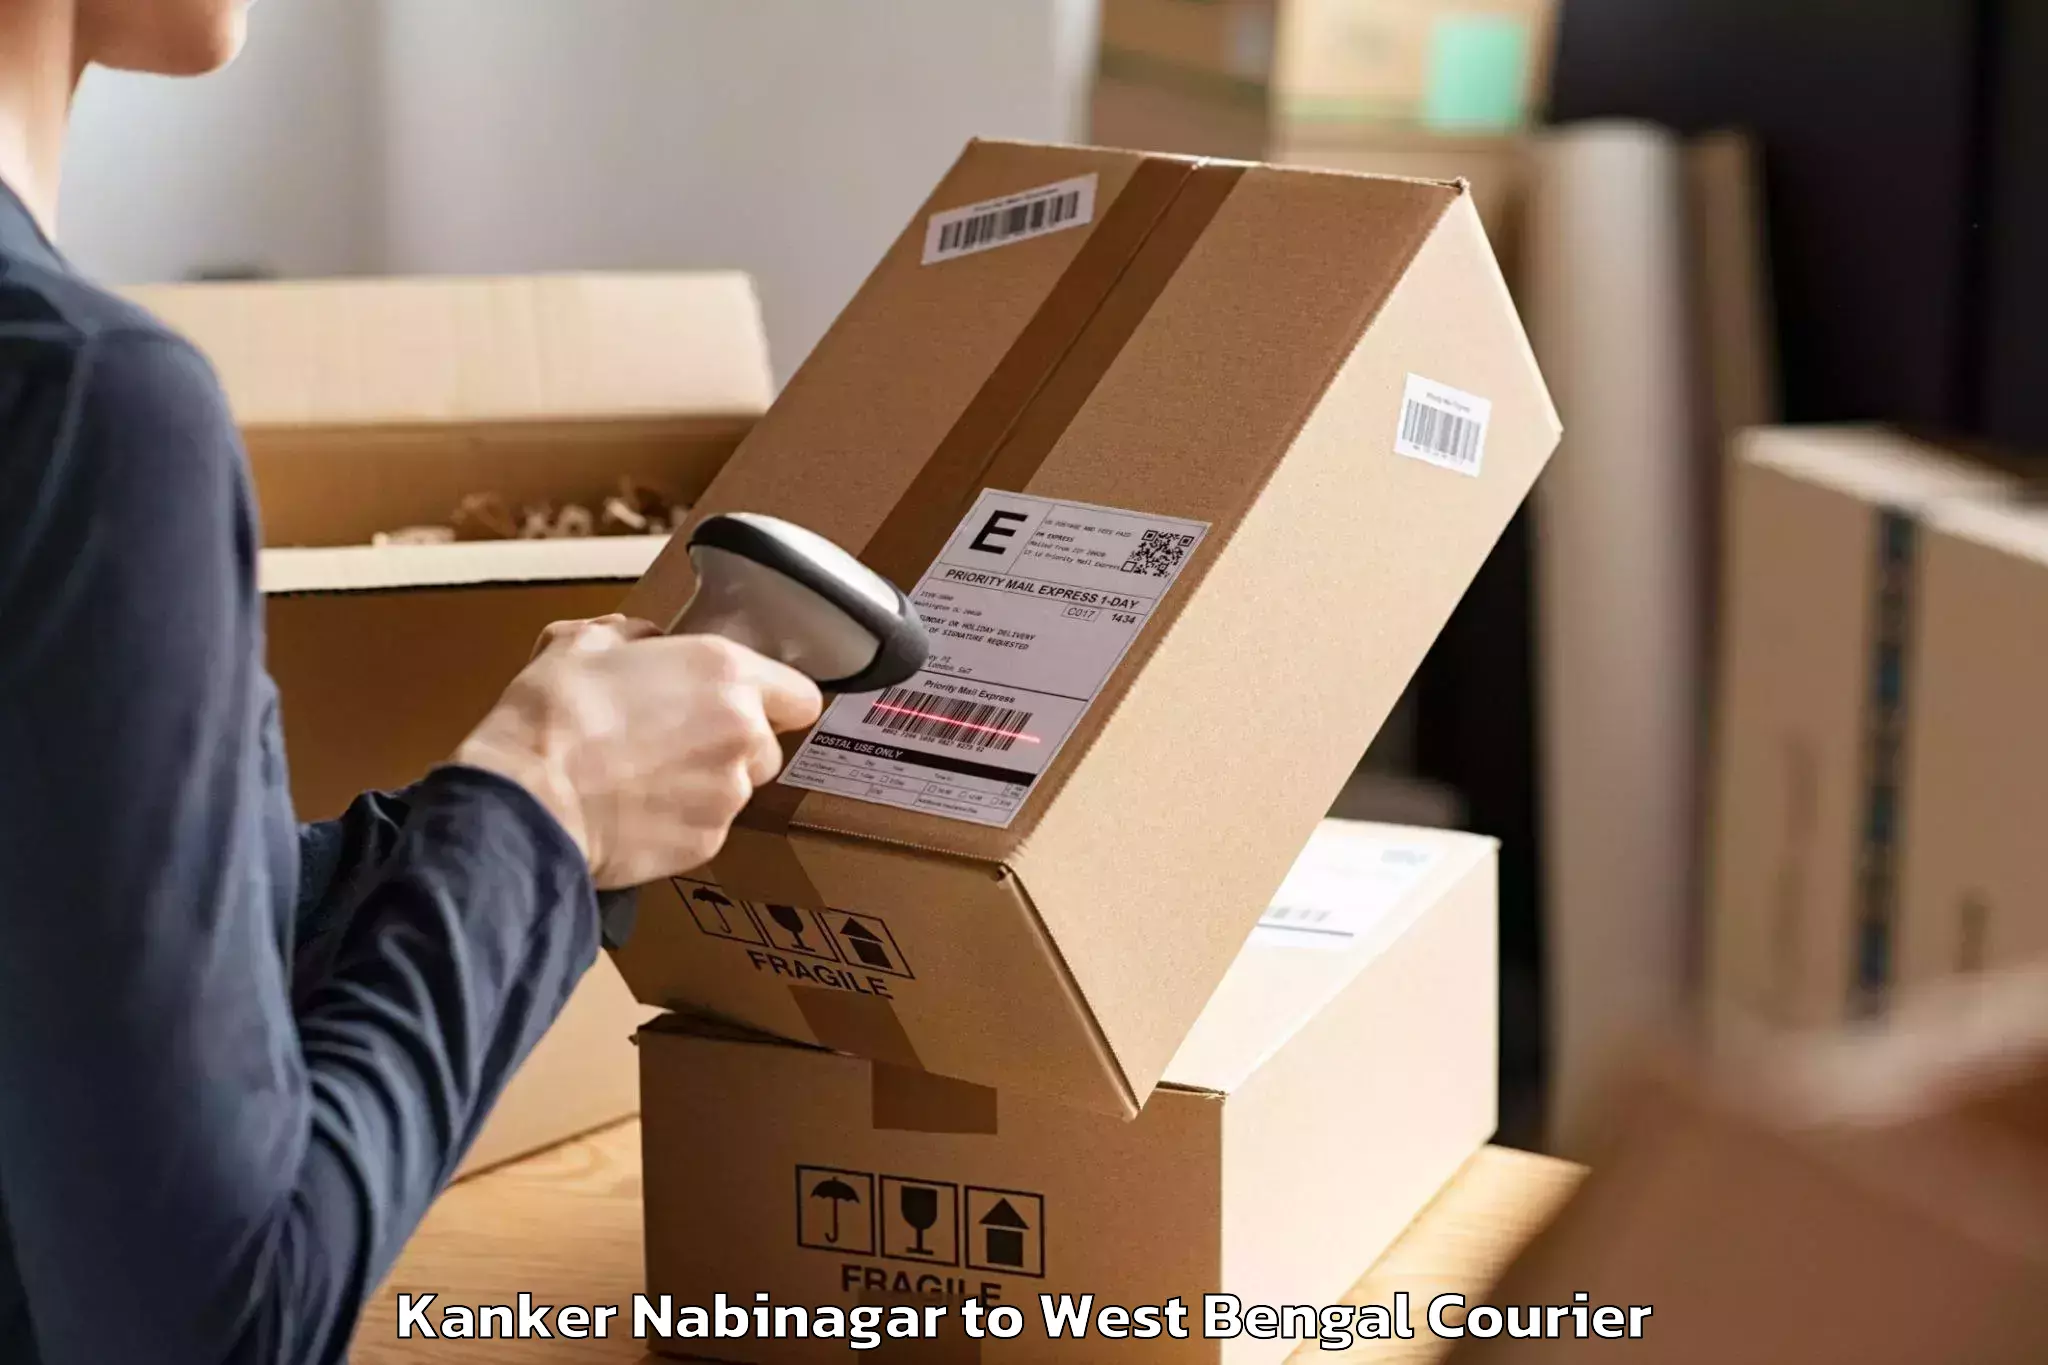 Professional furniture movers Kanker Nabinagar to Kalyani